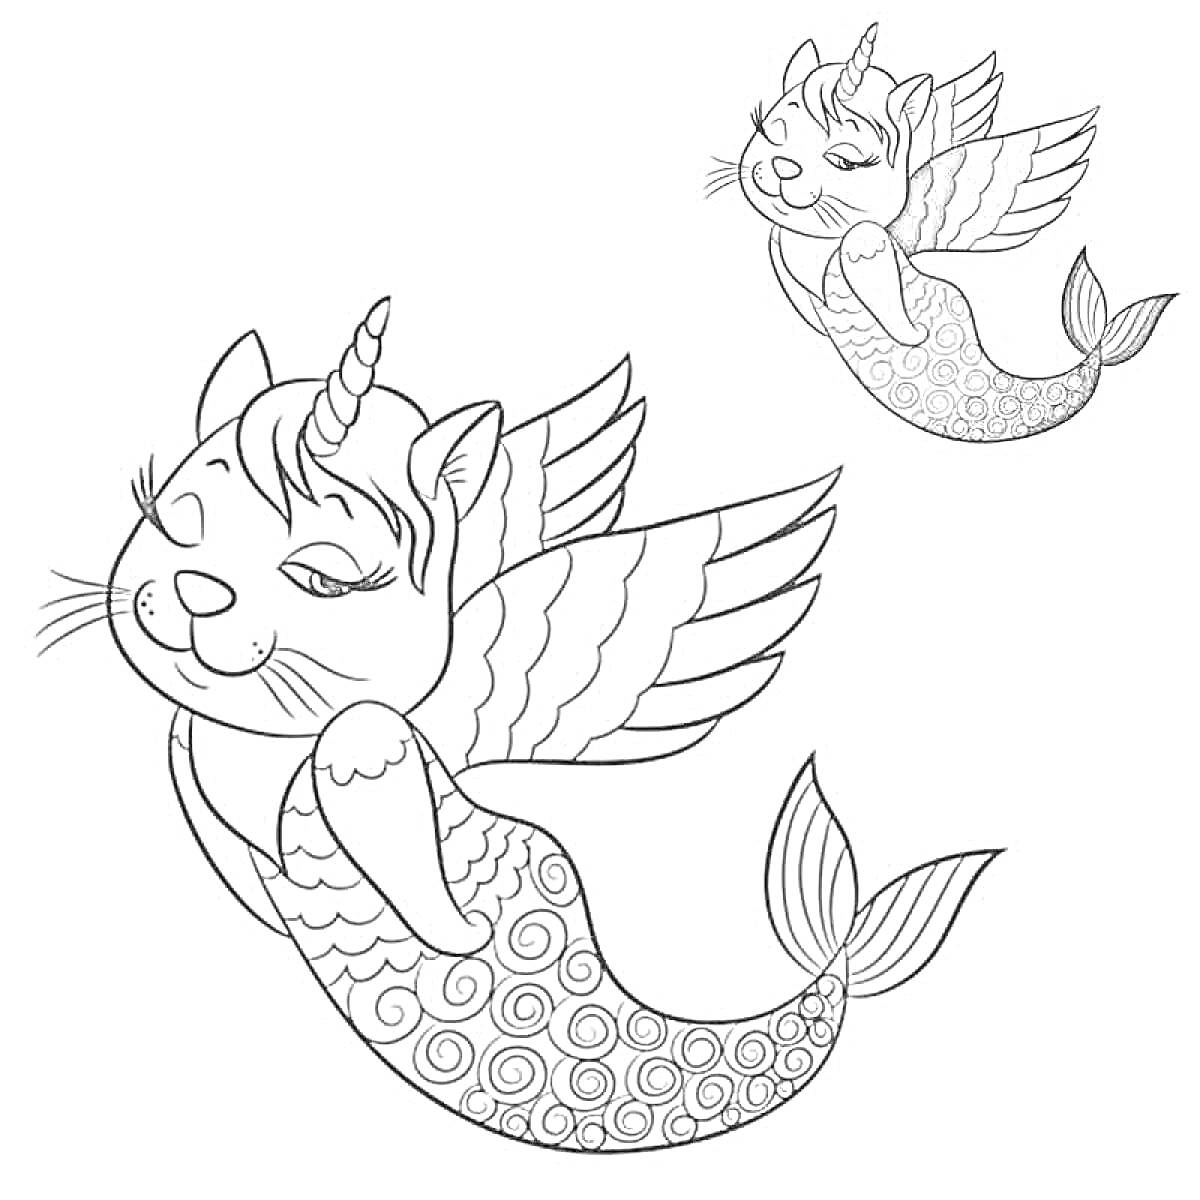 Раскраска Кот единорог с крыльями и хвостом русалки